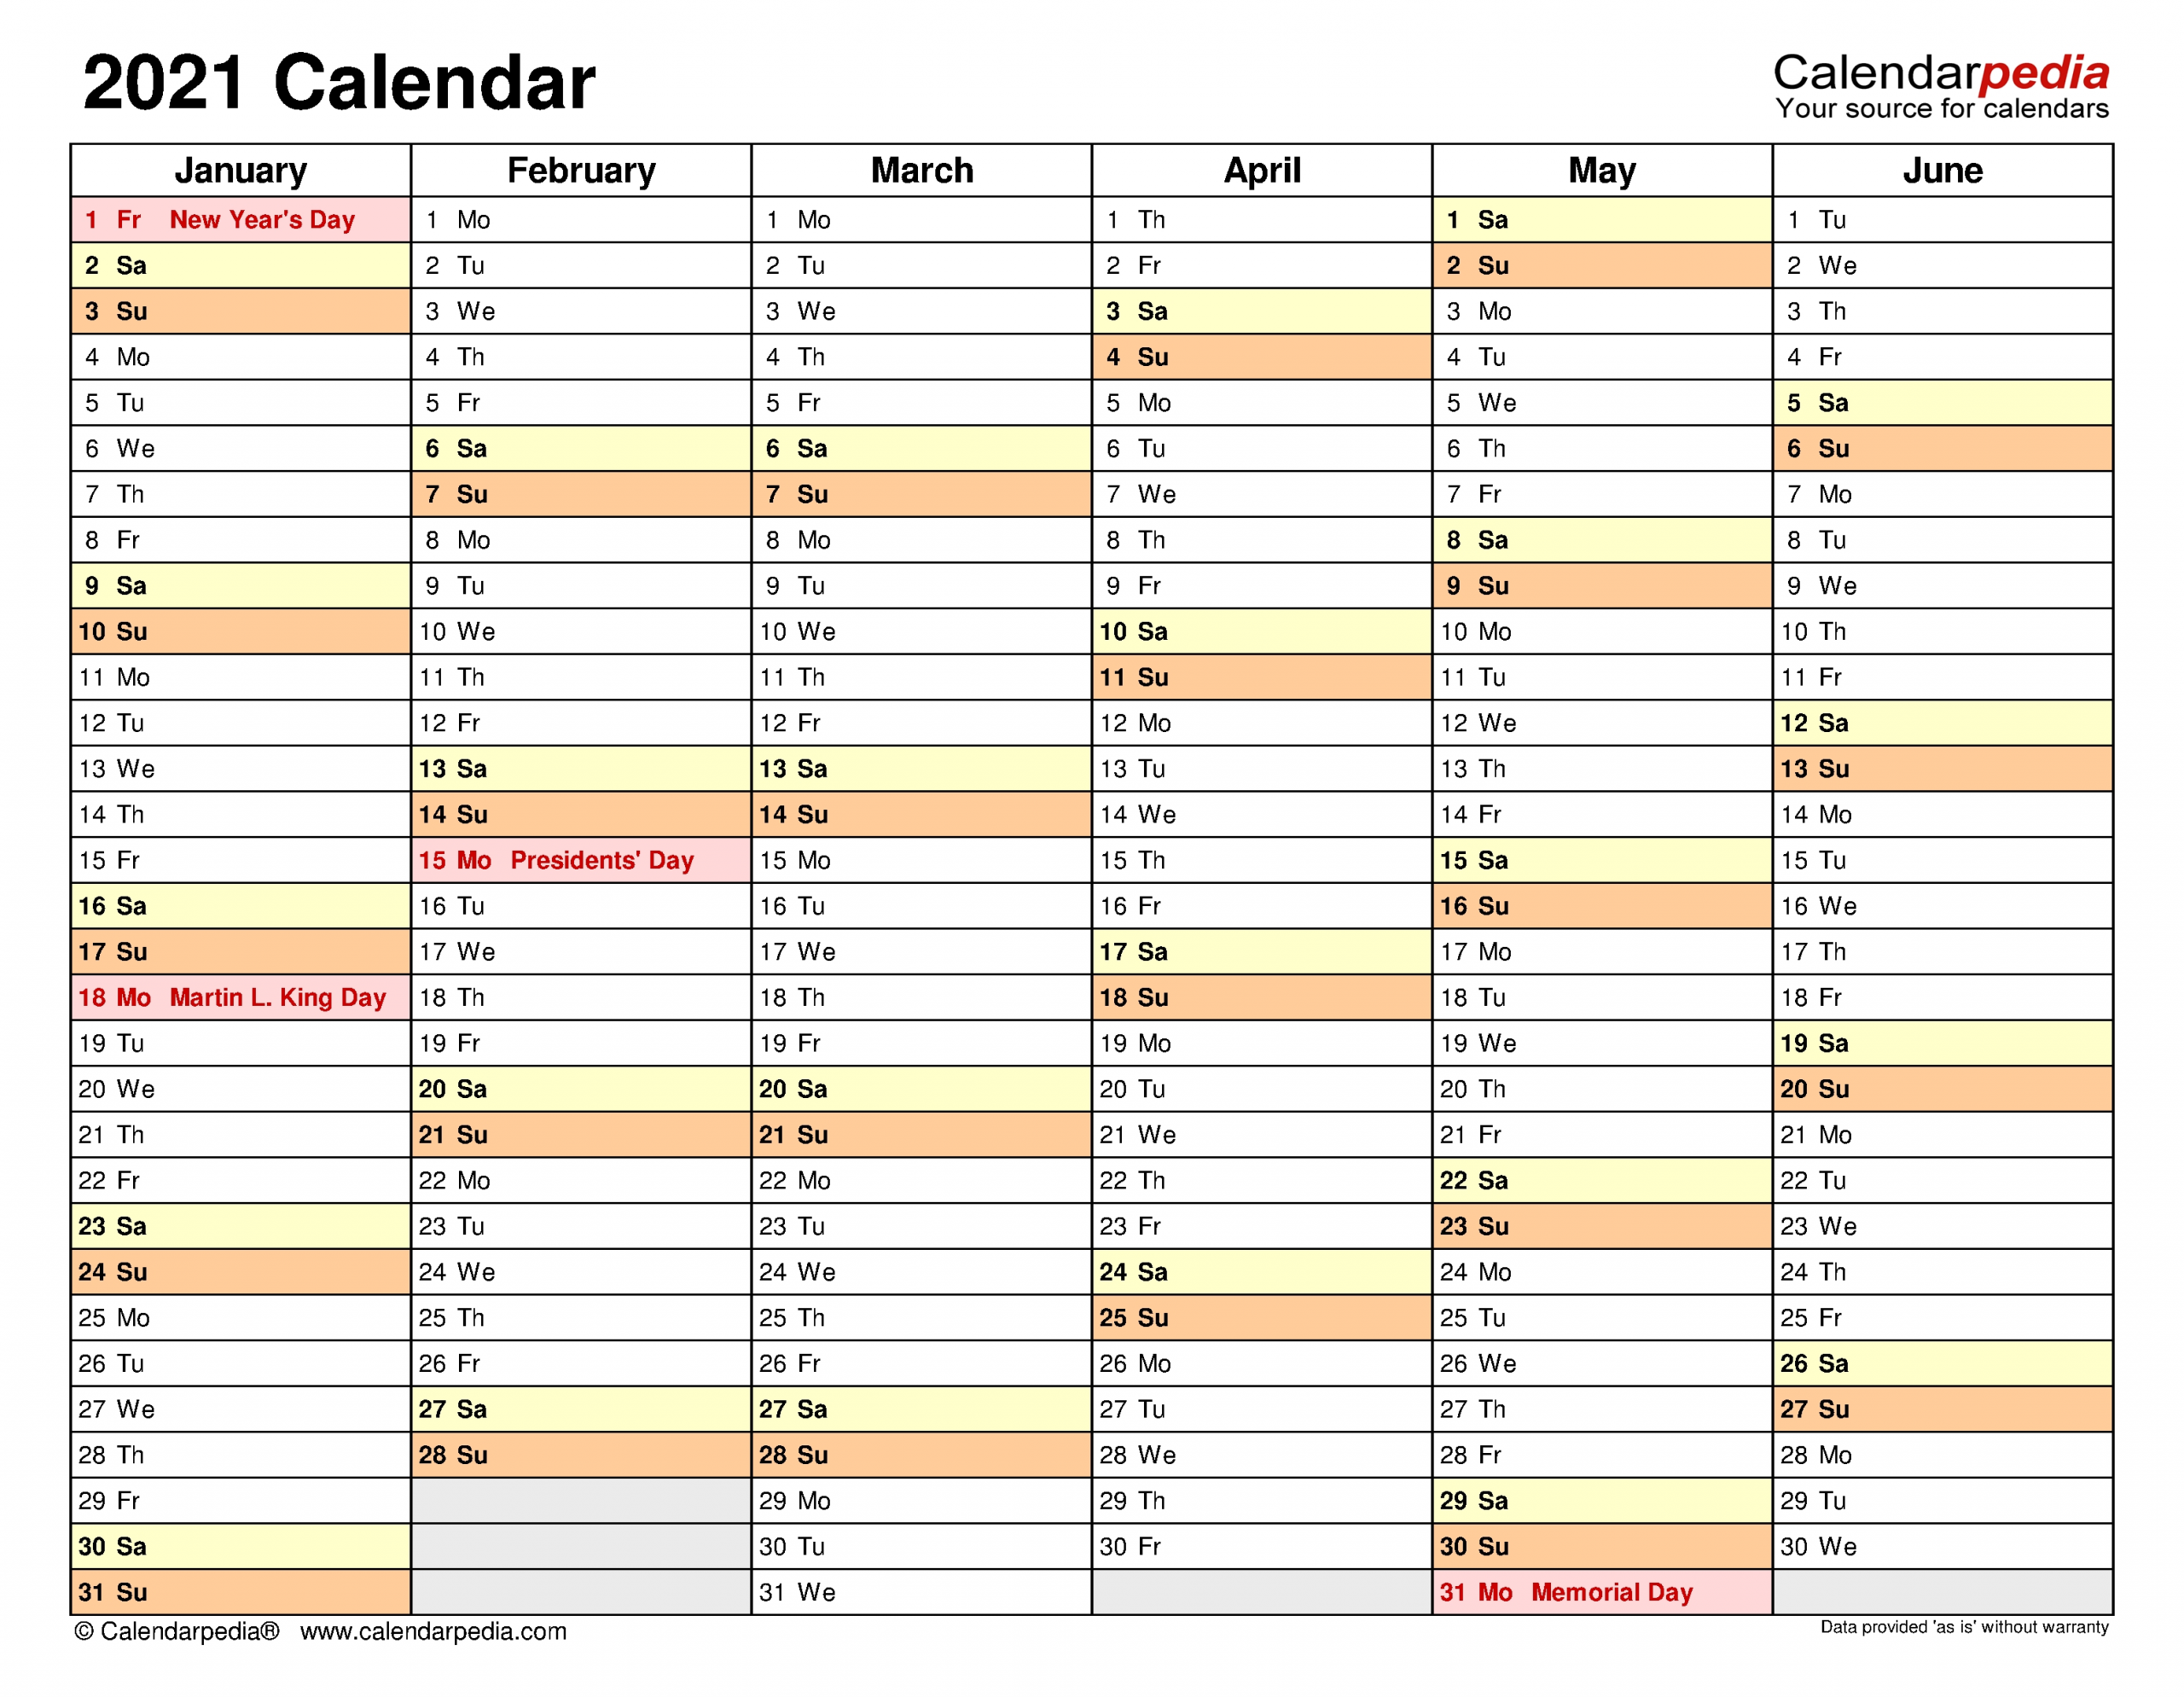 2021 Calendar - Free Printable Excel Templates - Calendarpedia-Editable Employee Vacation Calendar Template 2021